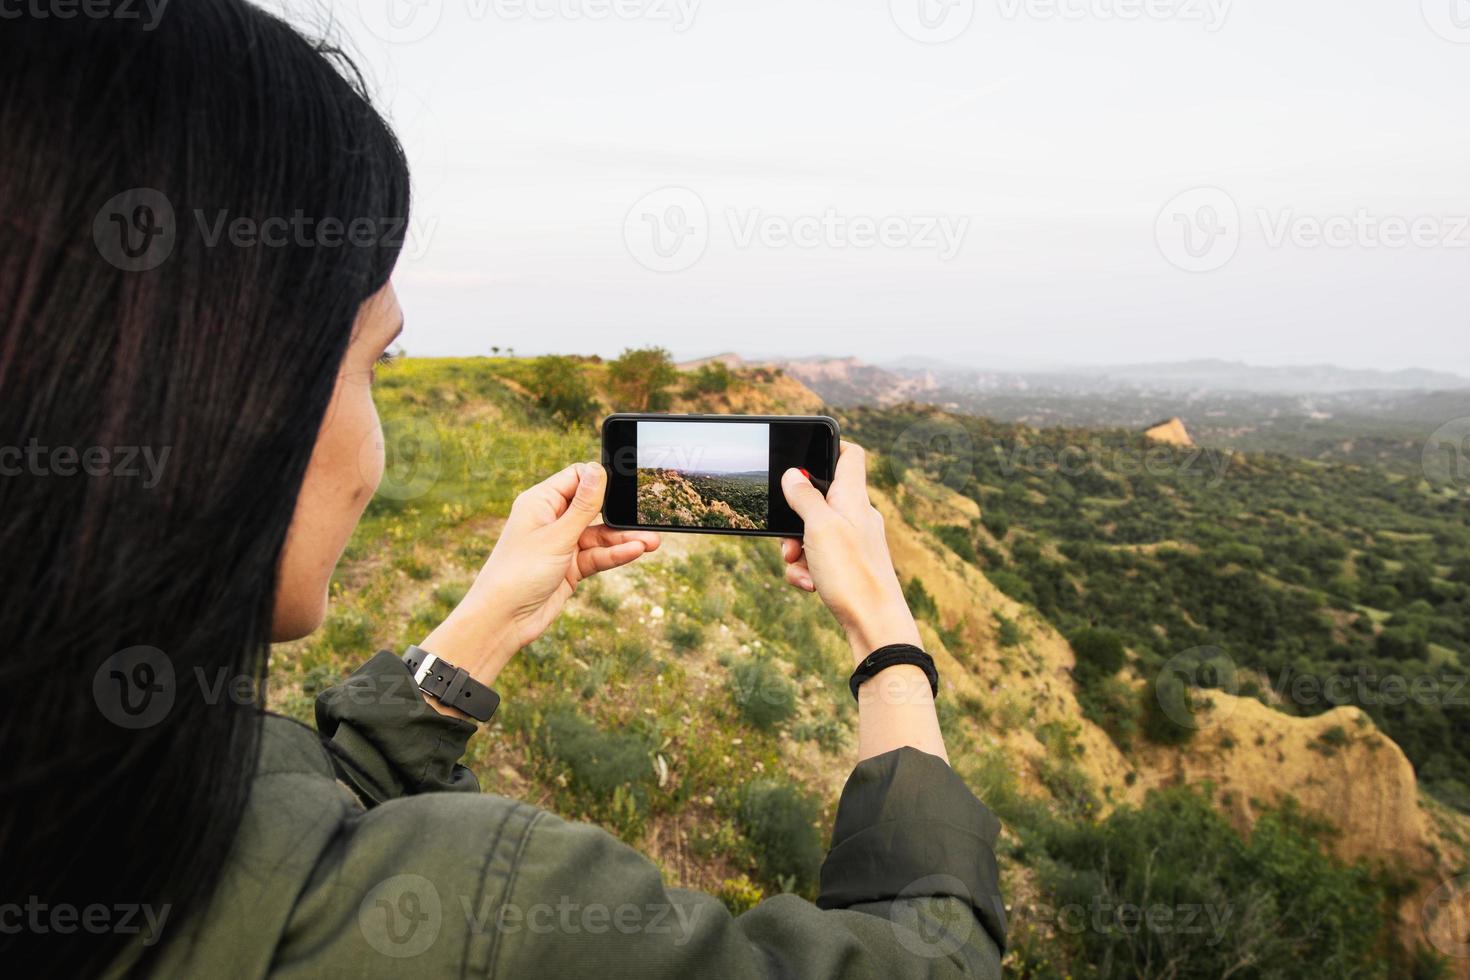 vrouw personen handen zijn Holding de smartphone en nemen foto van mooi natuur landschap Aan tour in de omgeving van vashlovani nationaal park. smartphone fotografie en gebruik makend van rooster mode